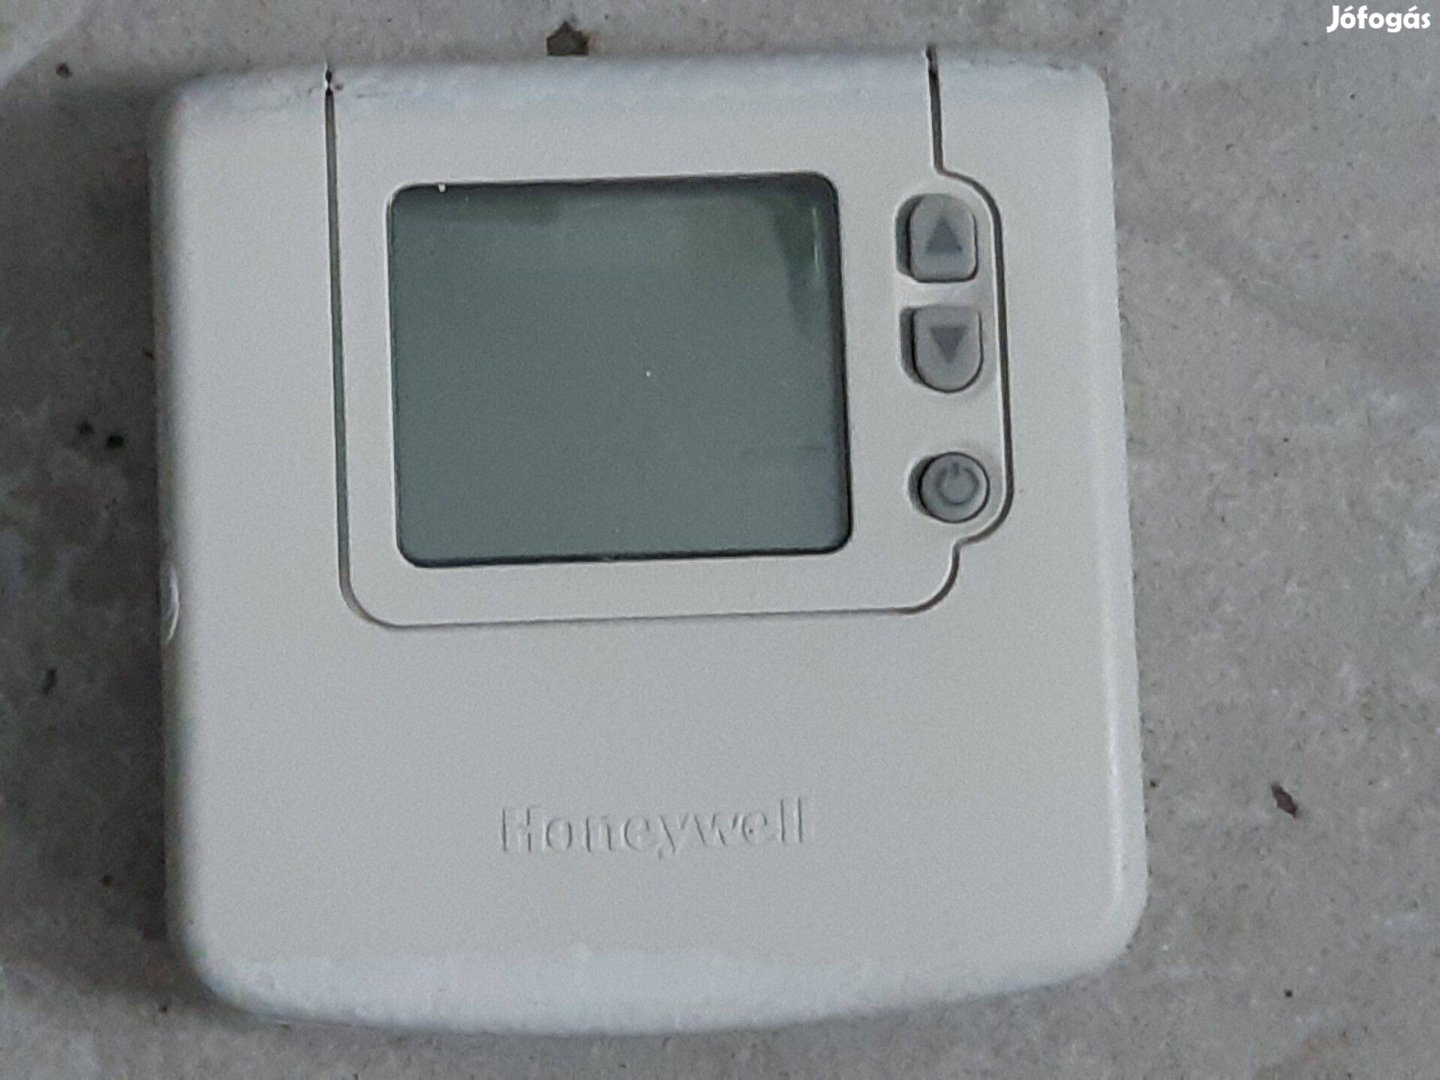 Honeywell DT90A digitális szobatermosztát öntanuló szabályozással